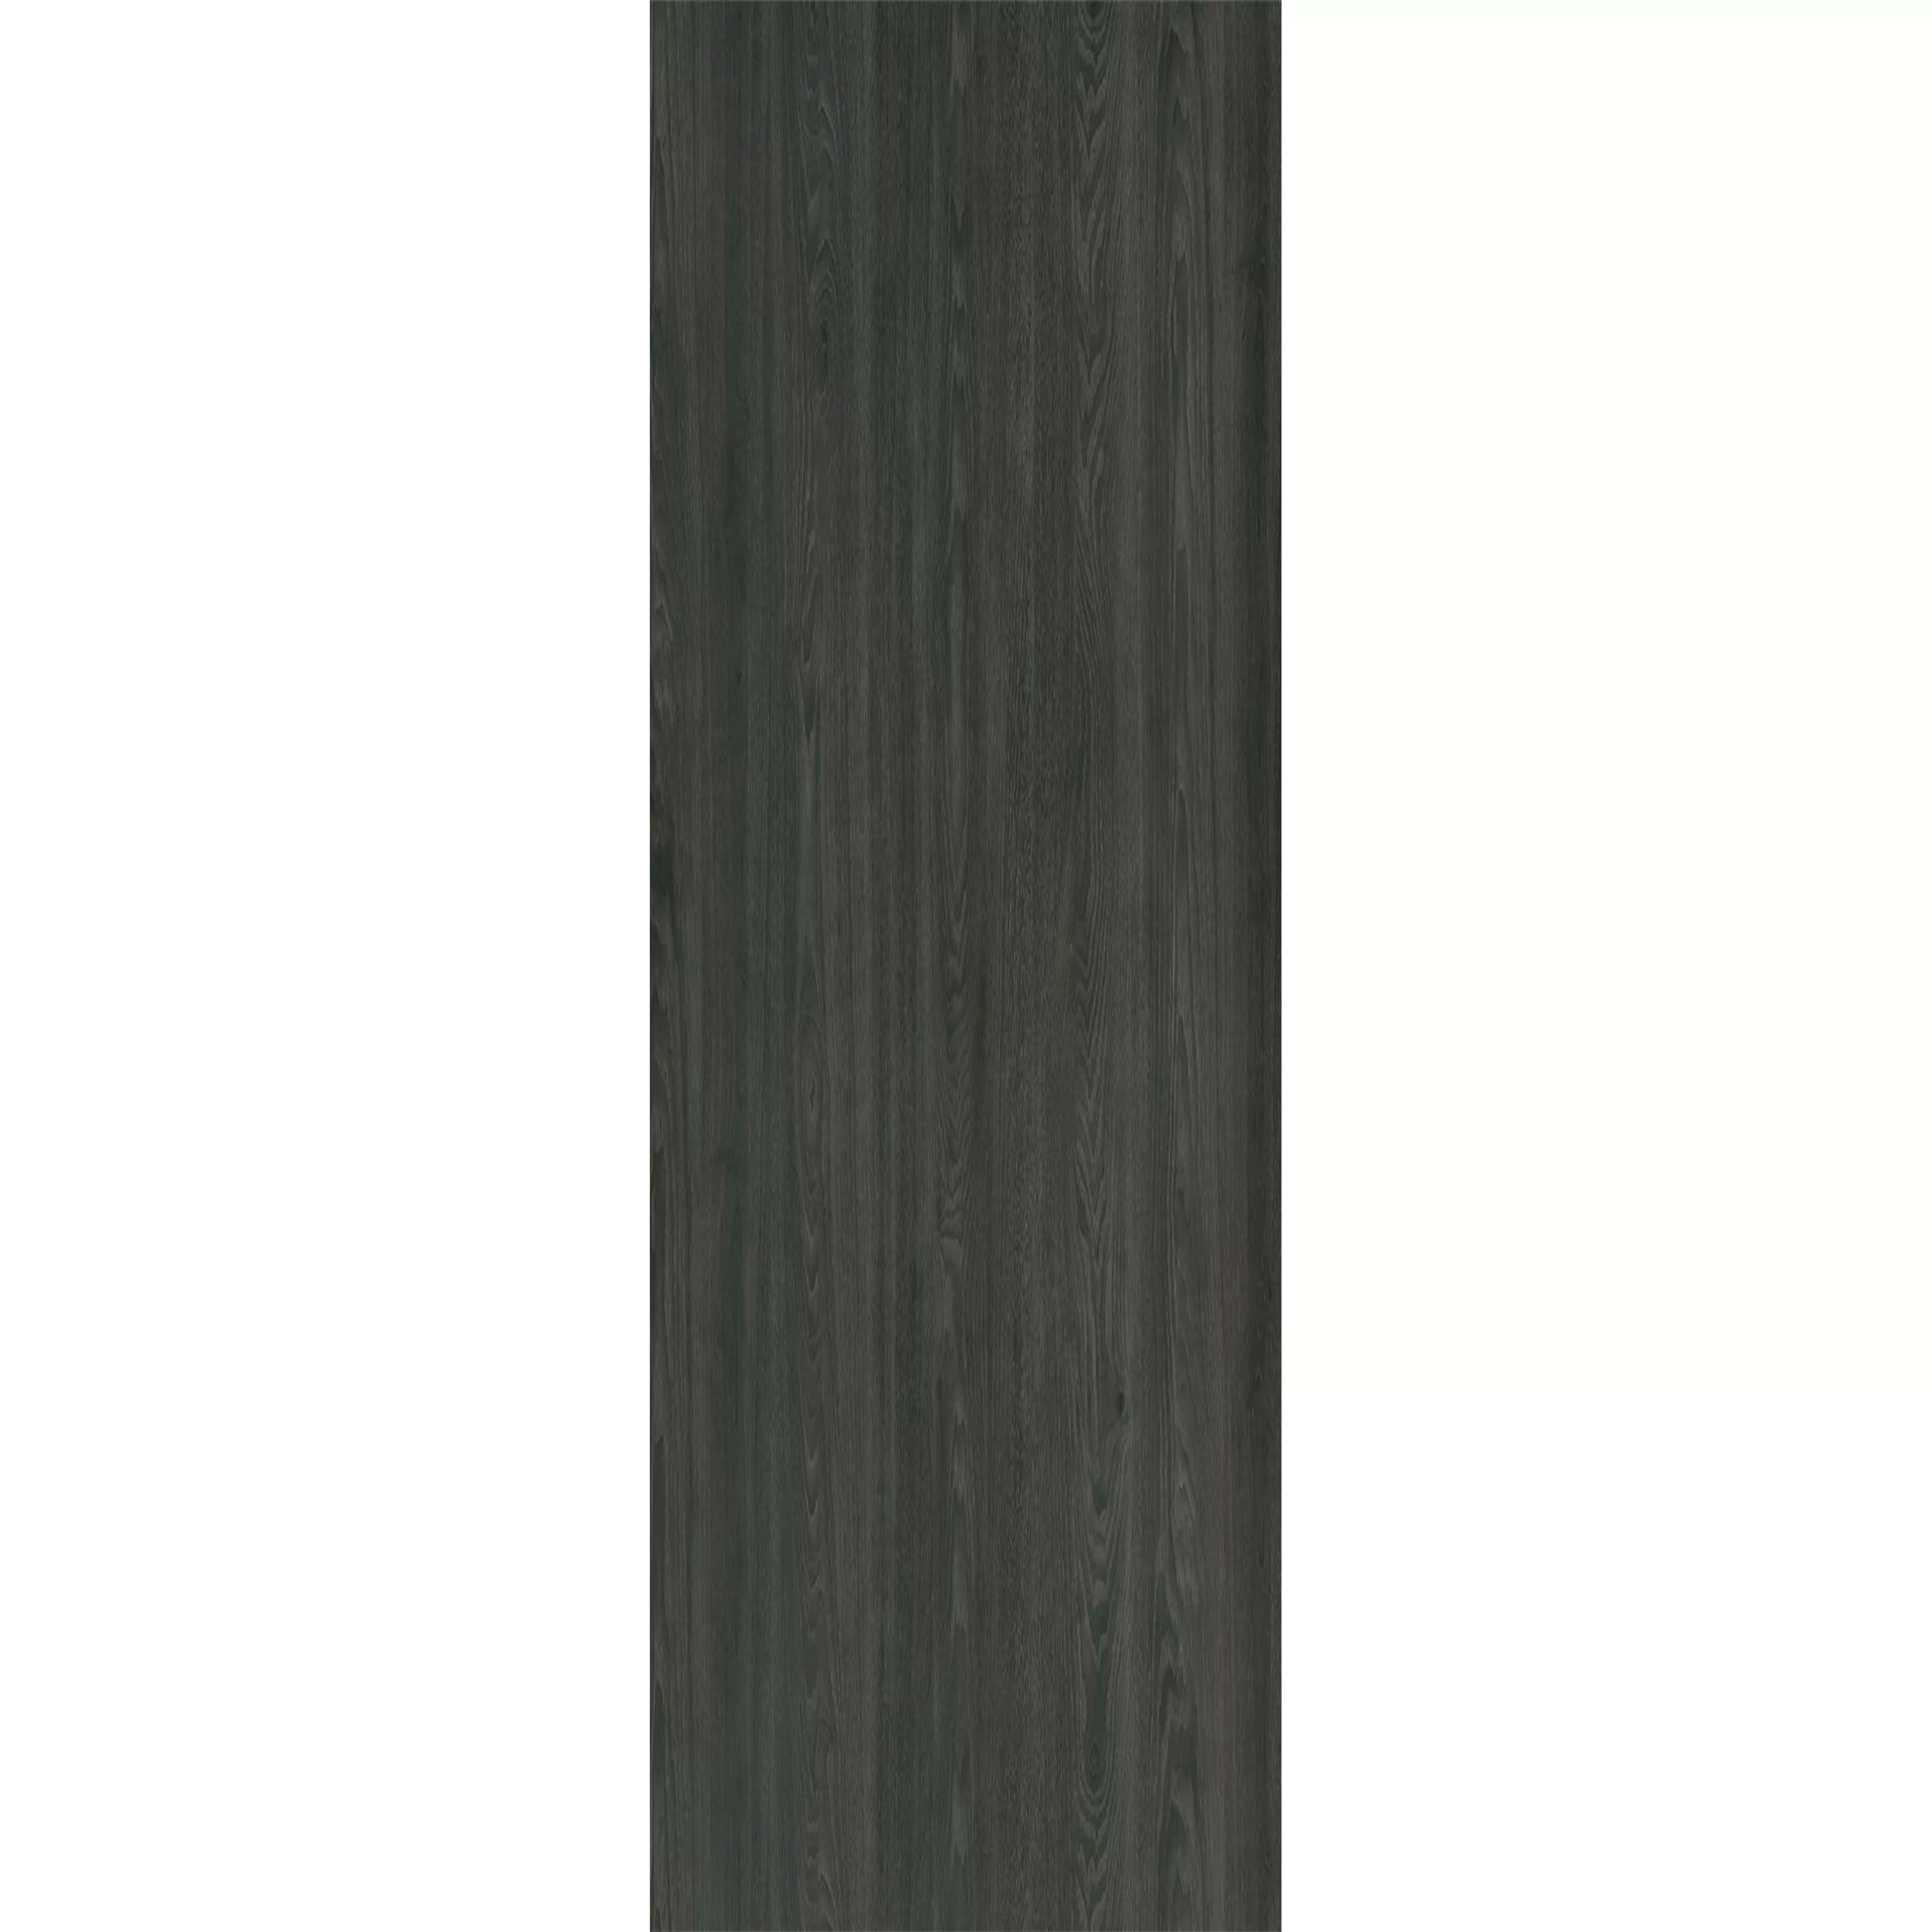 Δάπεδο Από Bινύλιο Σύστημα Κλικ Blackwood Ανθρακίτης 17,2x121cm